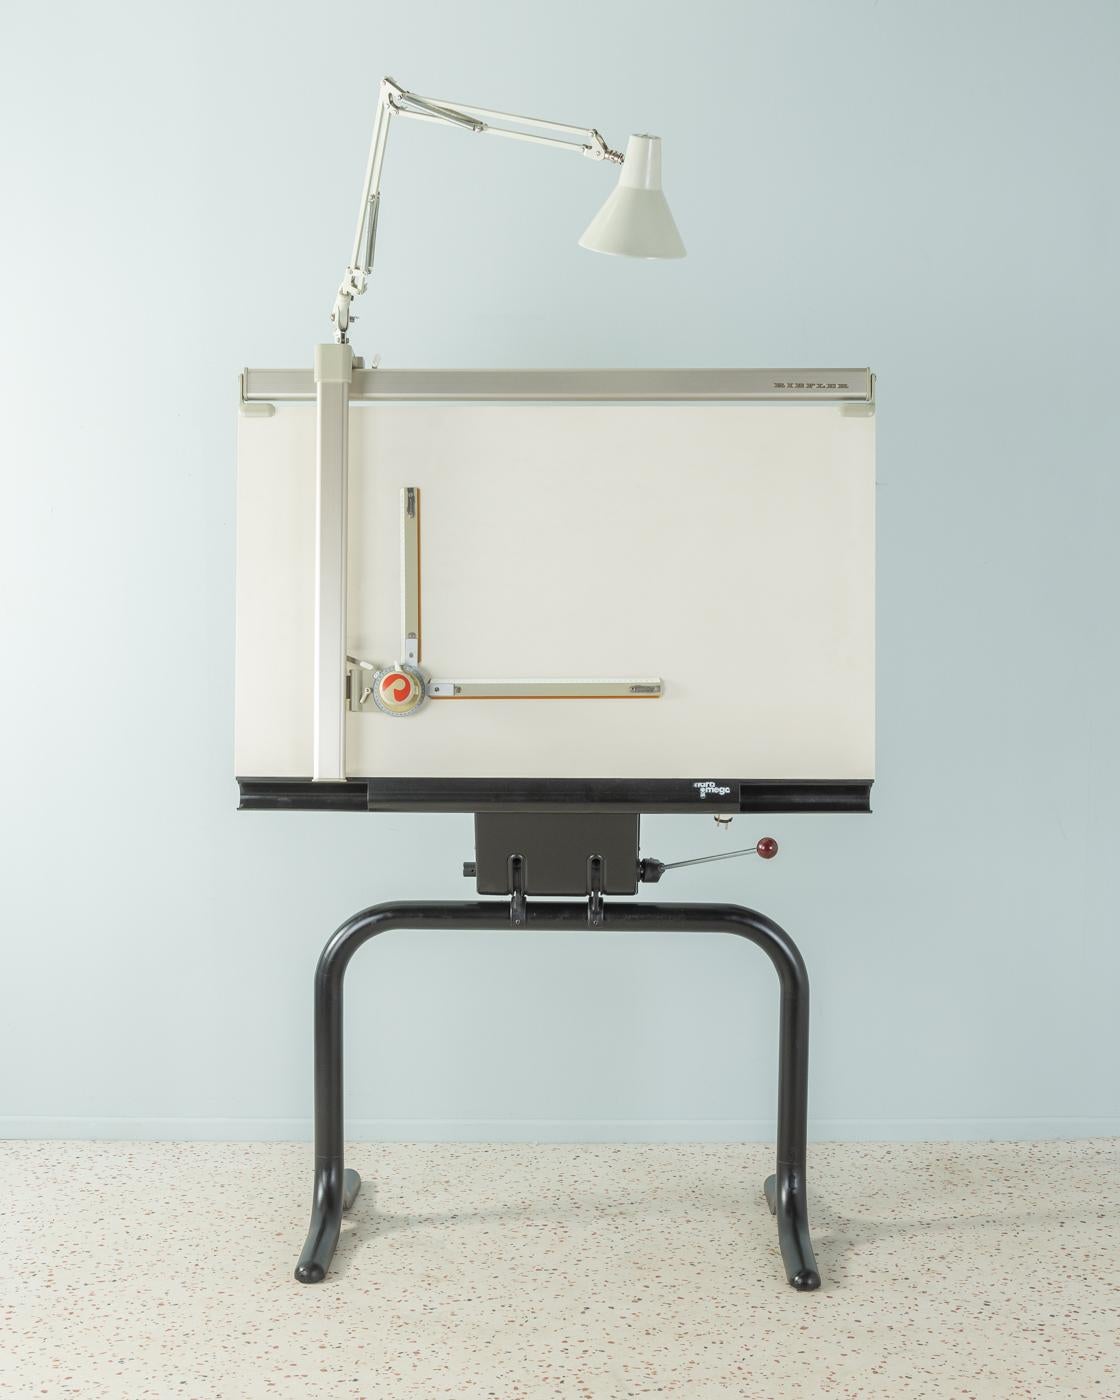 Seltene Architektenzeichnung Tischmodell Maramega von 1979 nach einem Entwurf von Popp. Sehr hochwertige Konstruktion aus schwarz lackiertem Stahl, ein Zeichentisch mit Präzisions-Zeichensystem von Riefler und die Originallampe. Das Gestell ist